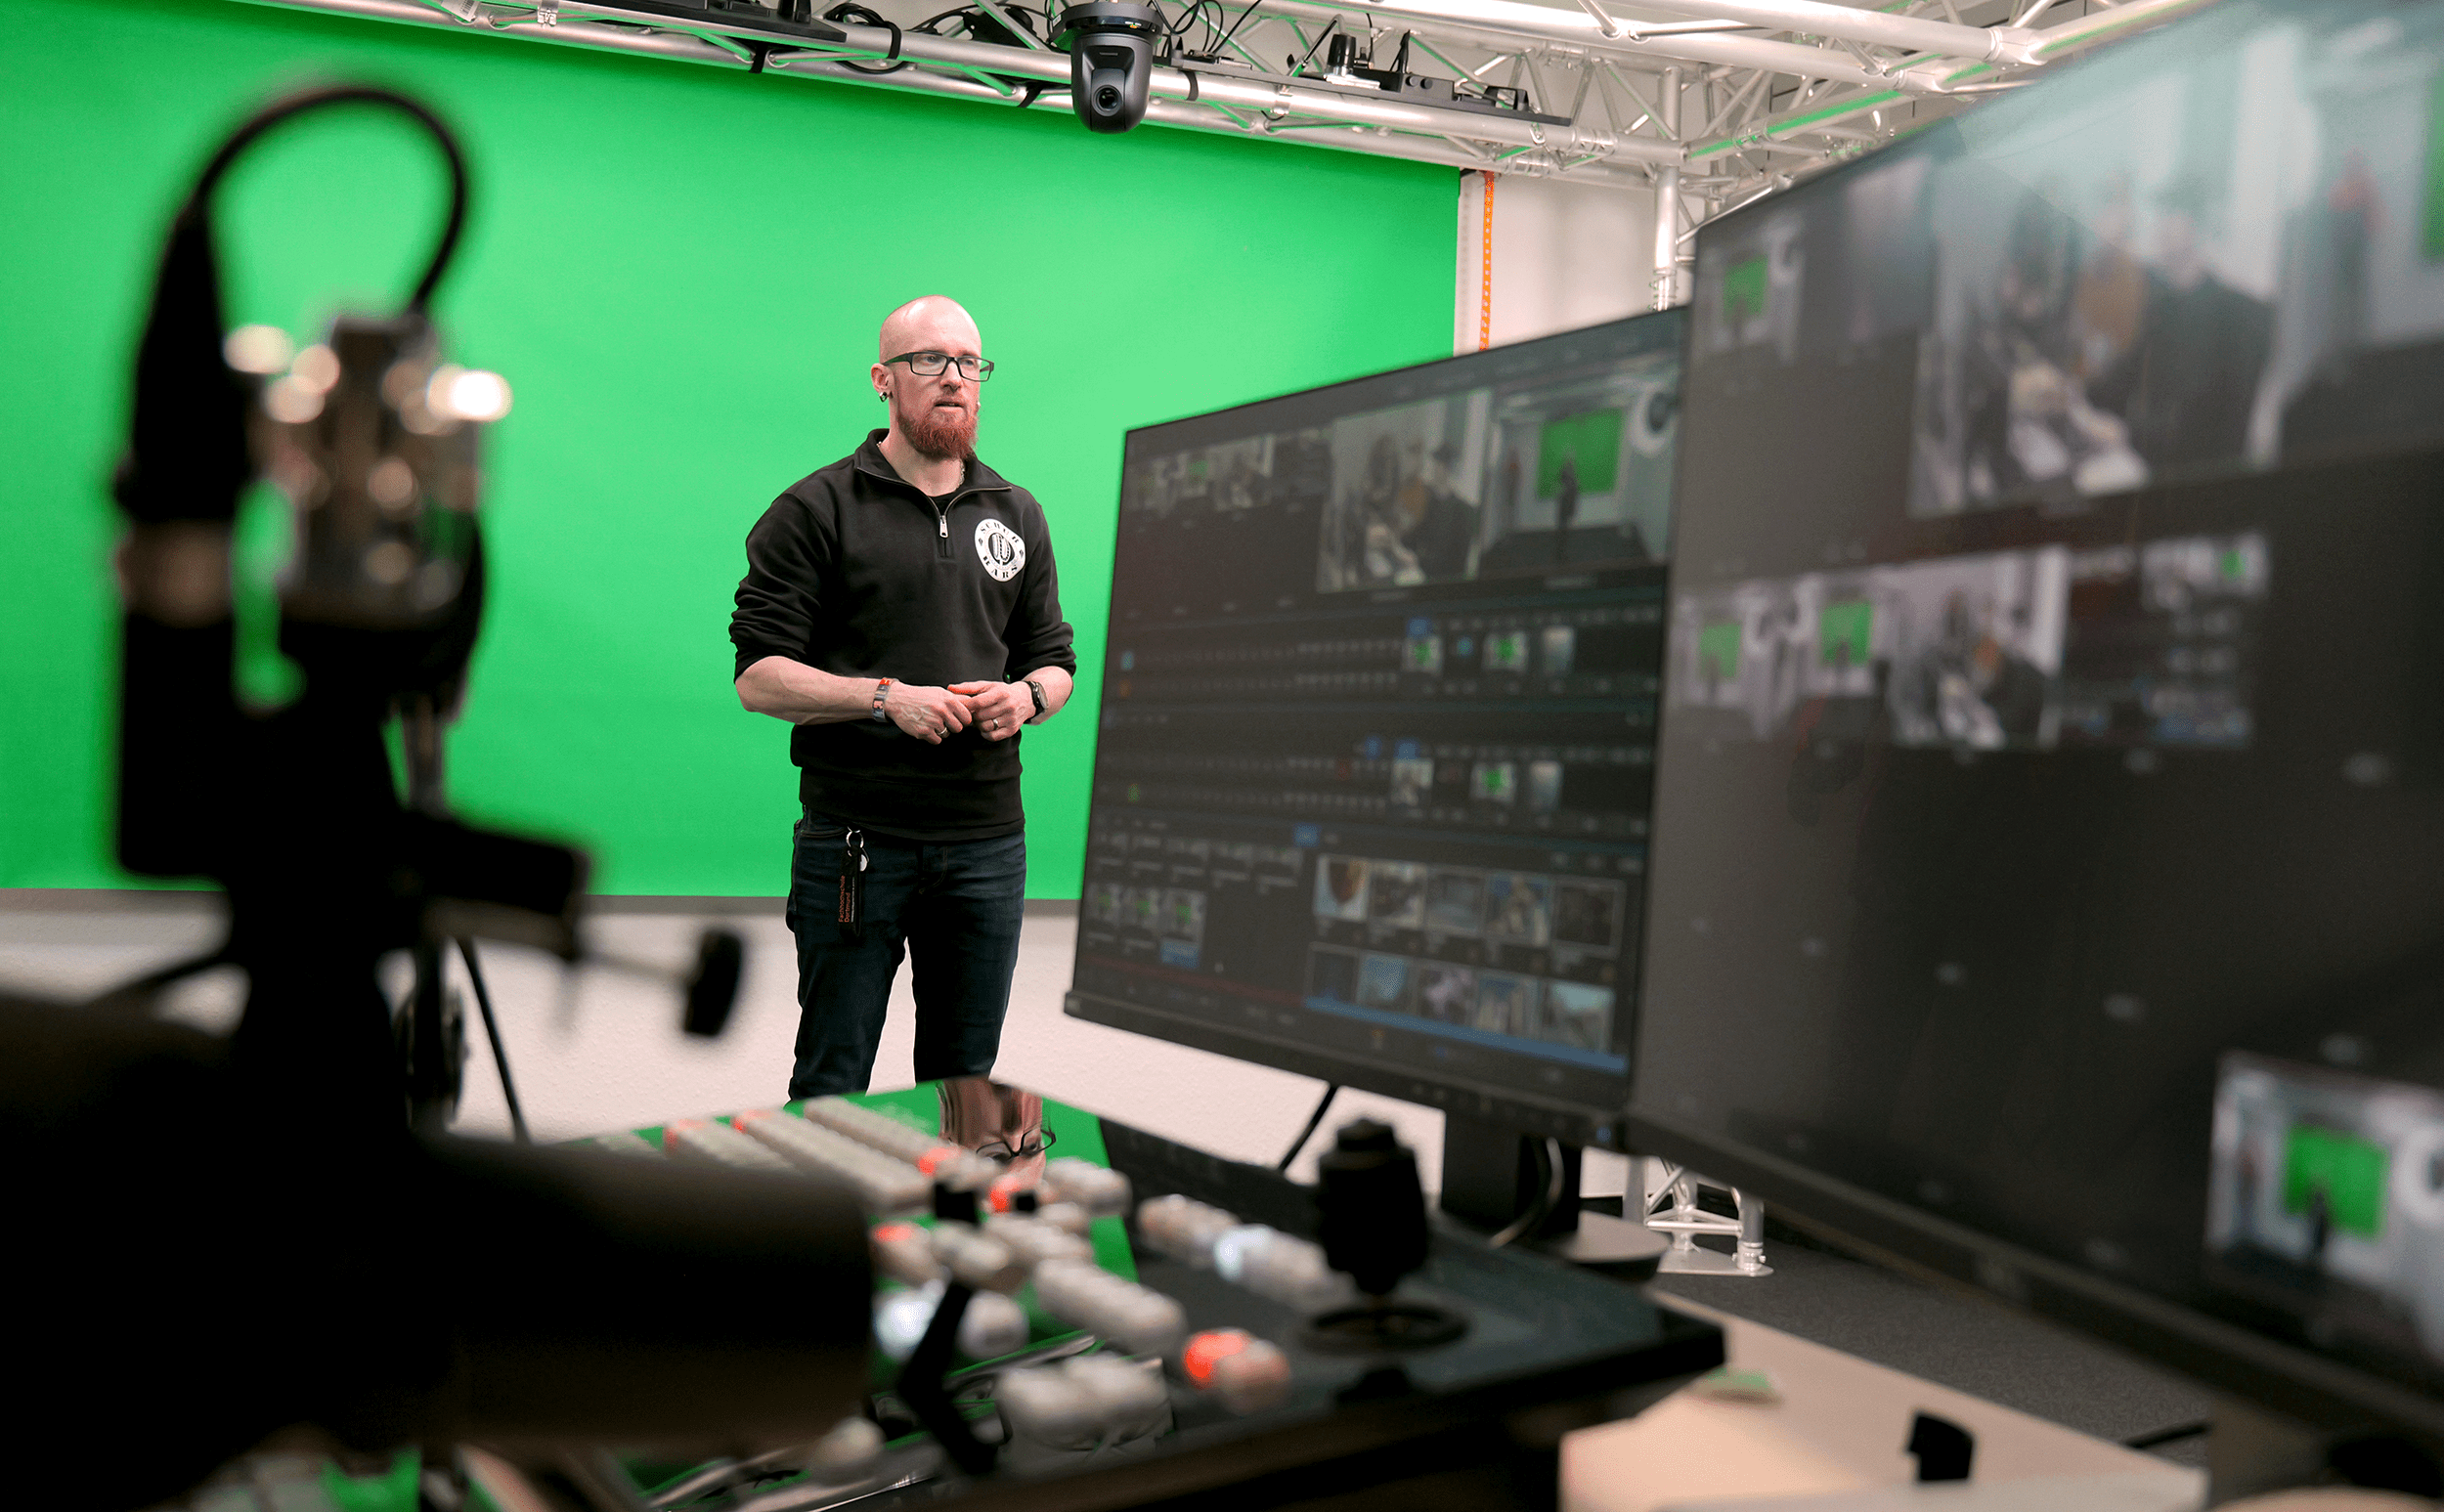 Vincent Beringhoff steht im Studioraum des Videolabors vor einem Greenscreen, im Vordergrund ein Regiepult mit zwei Monitoren